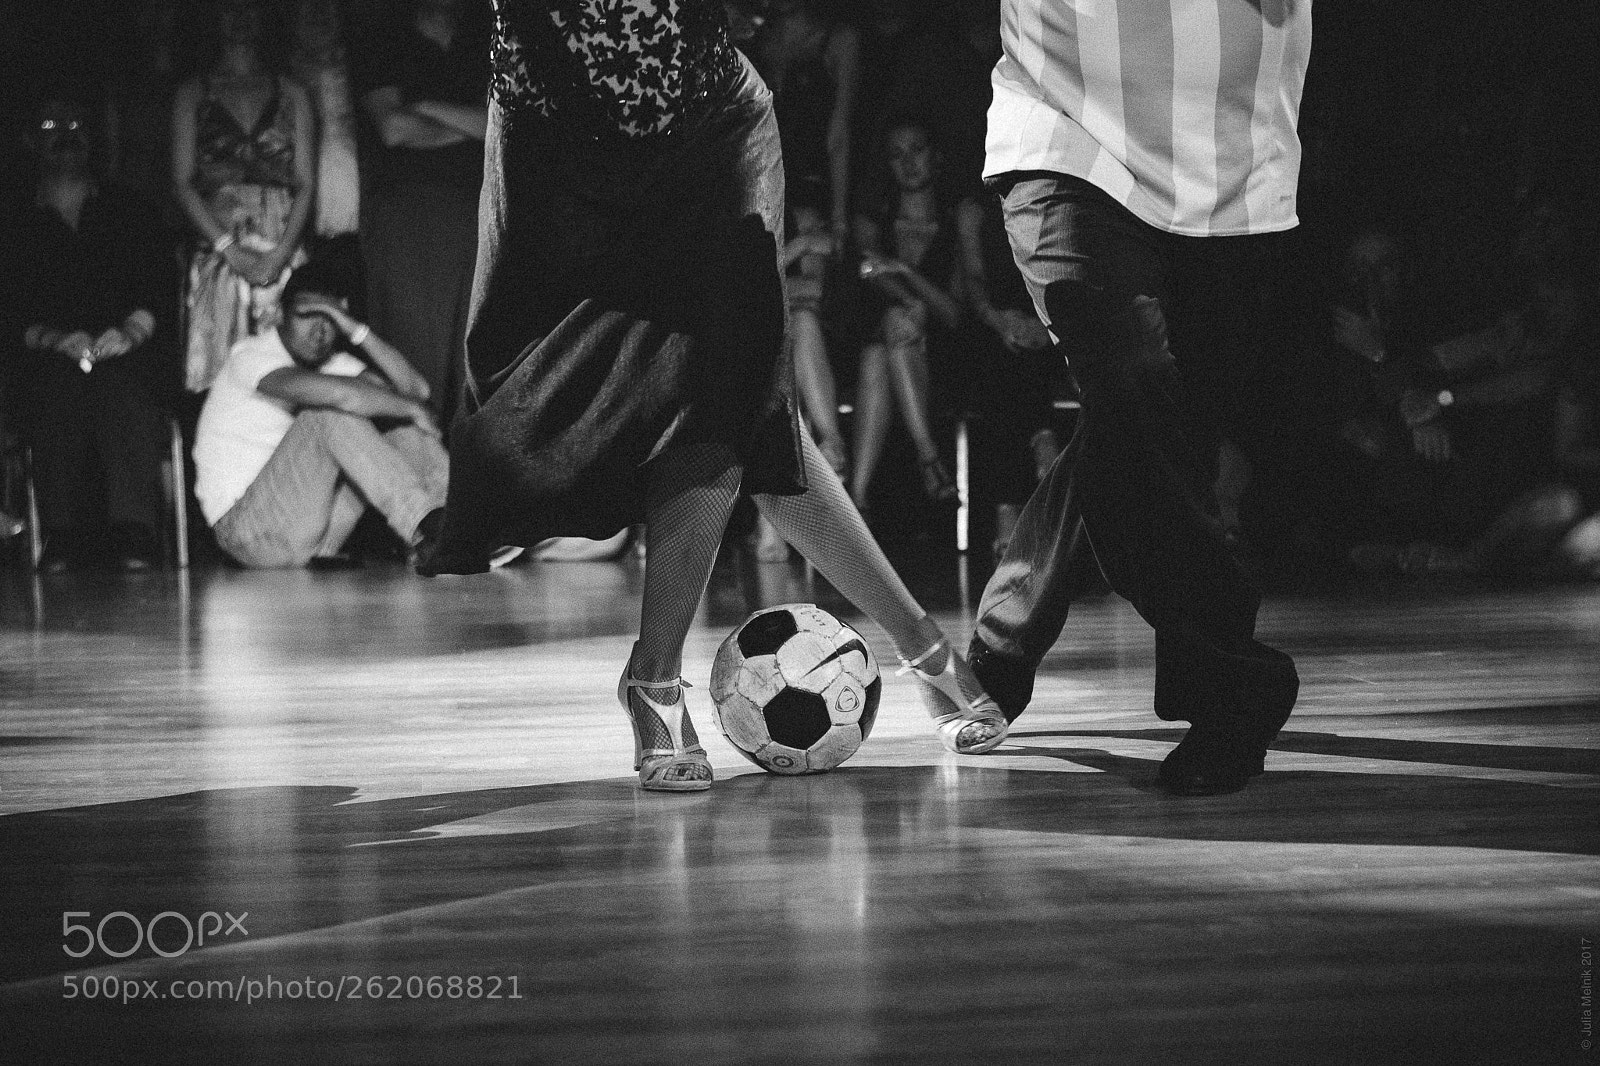 Canon EOS 6D sample photo. Football & tango photography